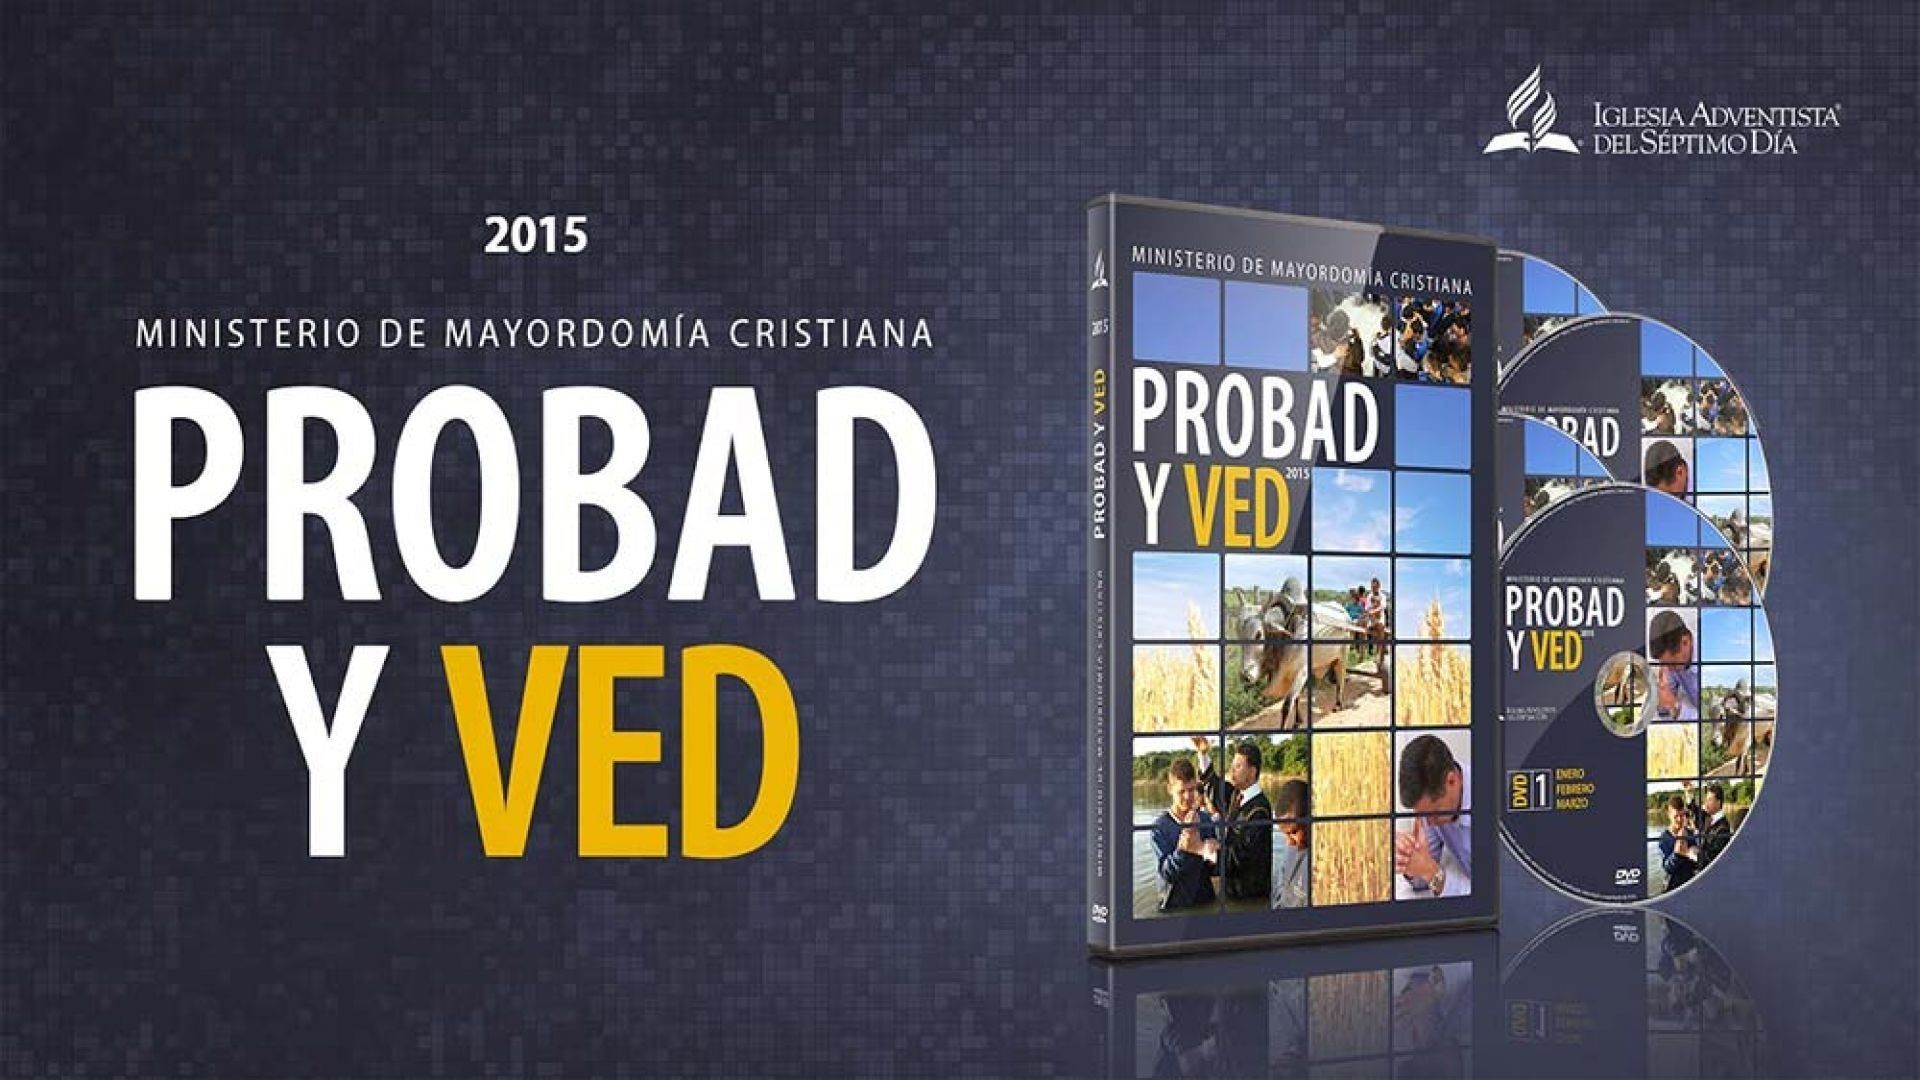 07/Feb. Mercadería pesada - Probad y Ved | Iglesia Adventista